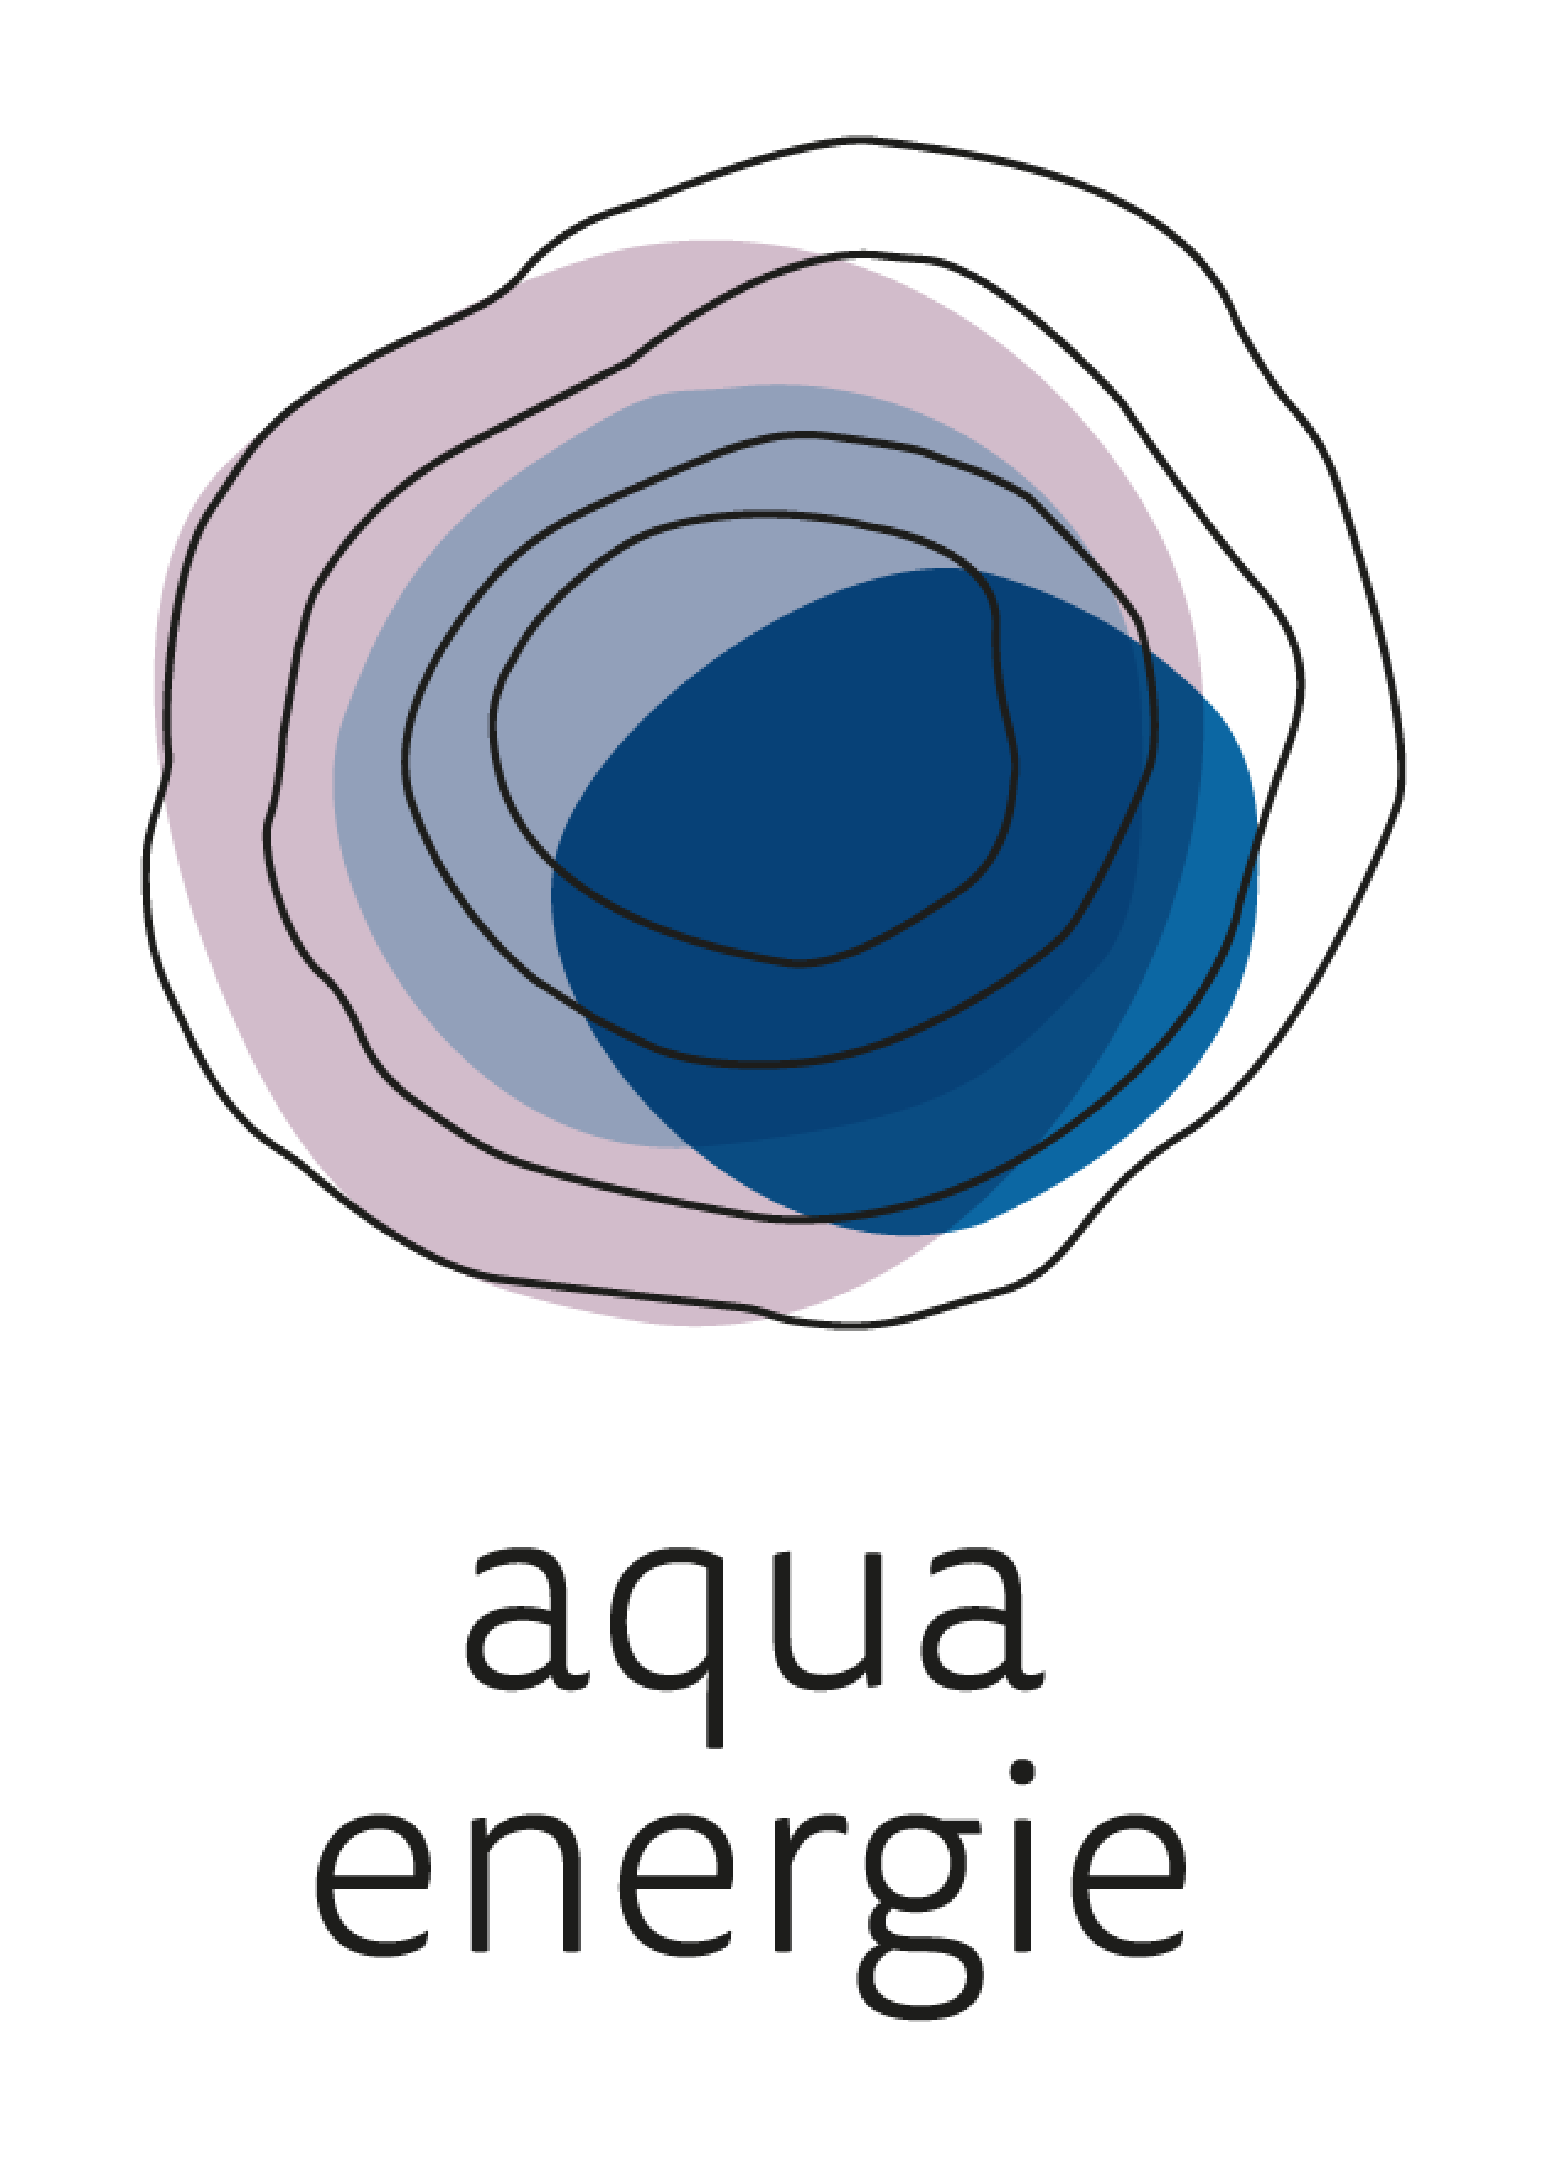 aquaenergie logo